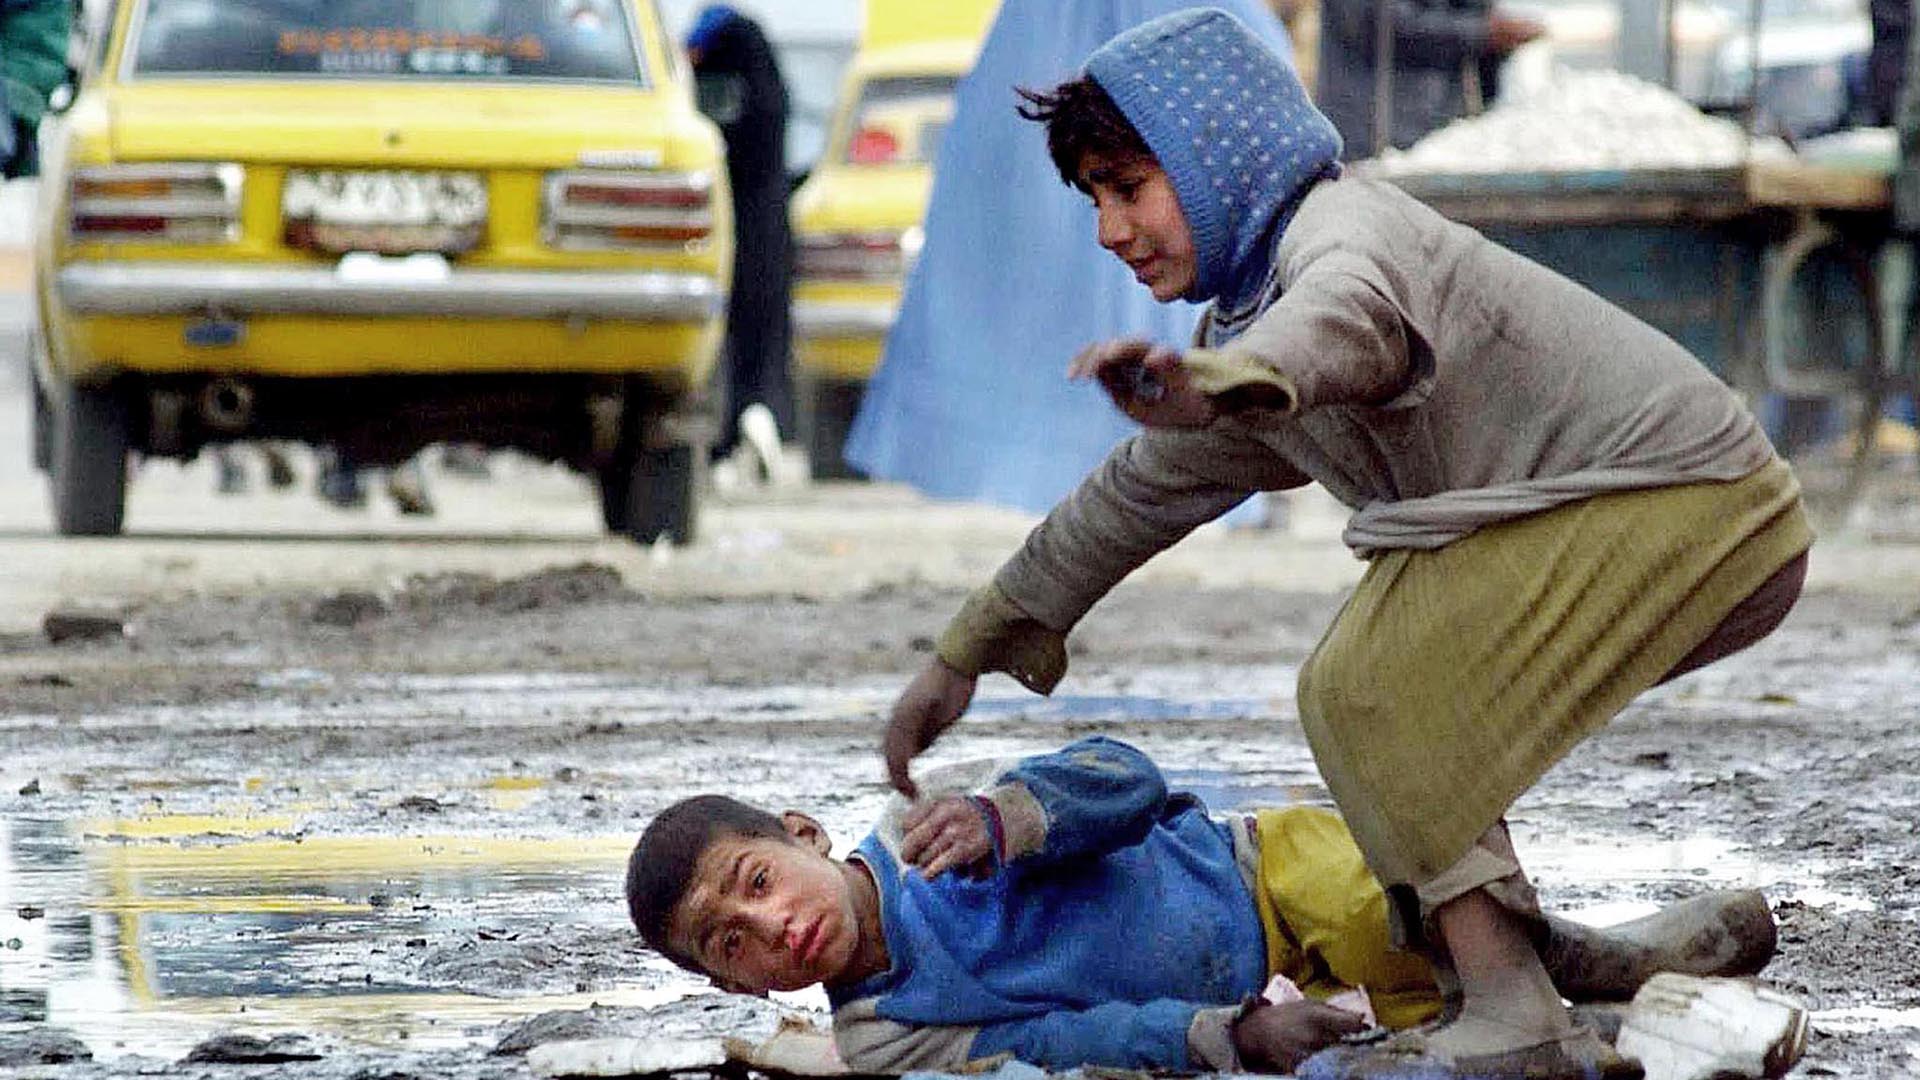 Un niño afgano yace en el suelo cubierto de nieve mientras mendiga en una calle de Kabul, el 24 de febrero de 2003. Afganistán, devastado por décadas de guerra, se encuentra entre los países más pobres de Asia. (AFP / JOYA SAMAD)